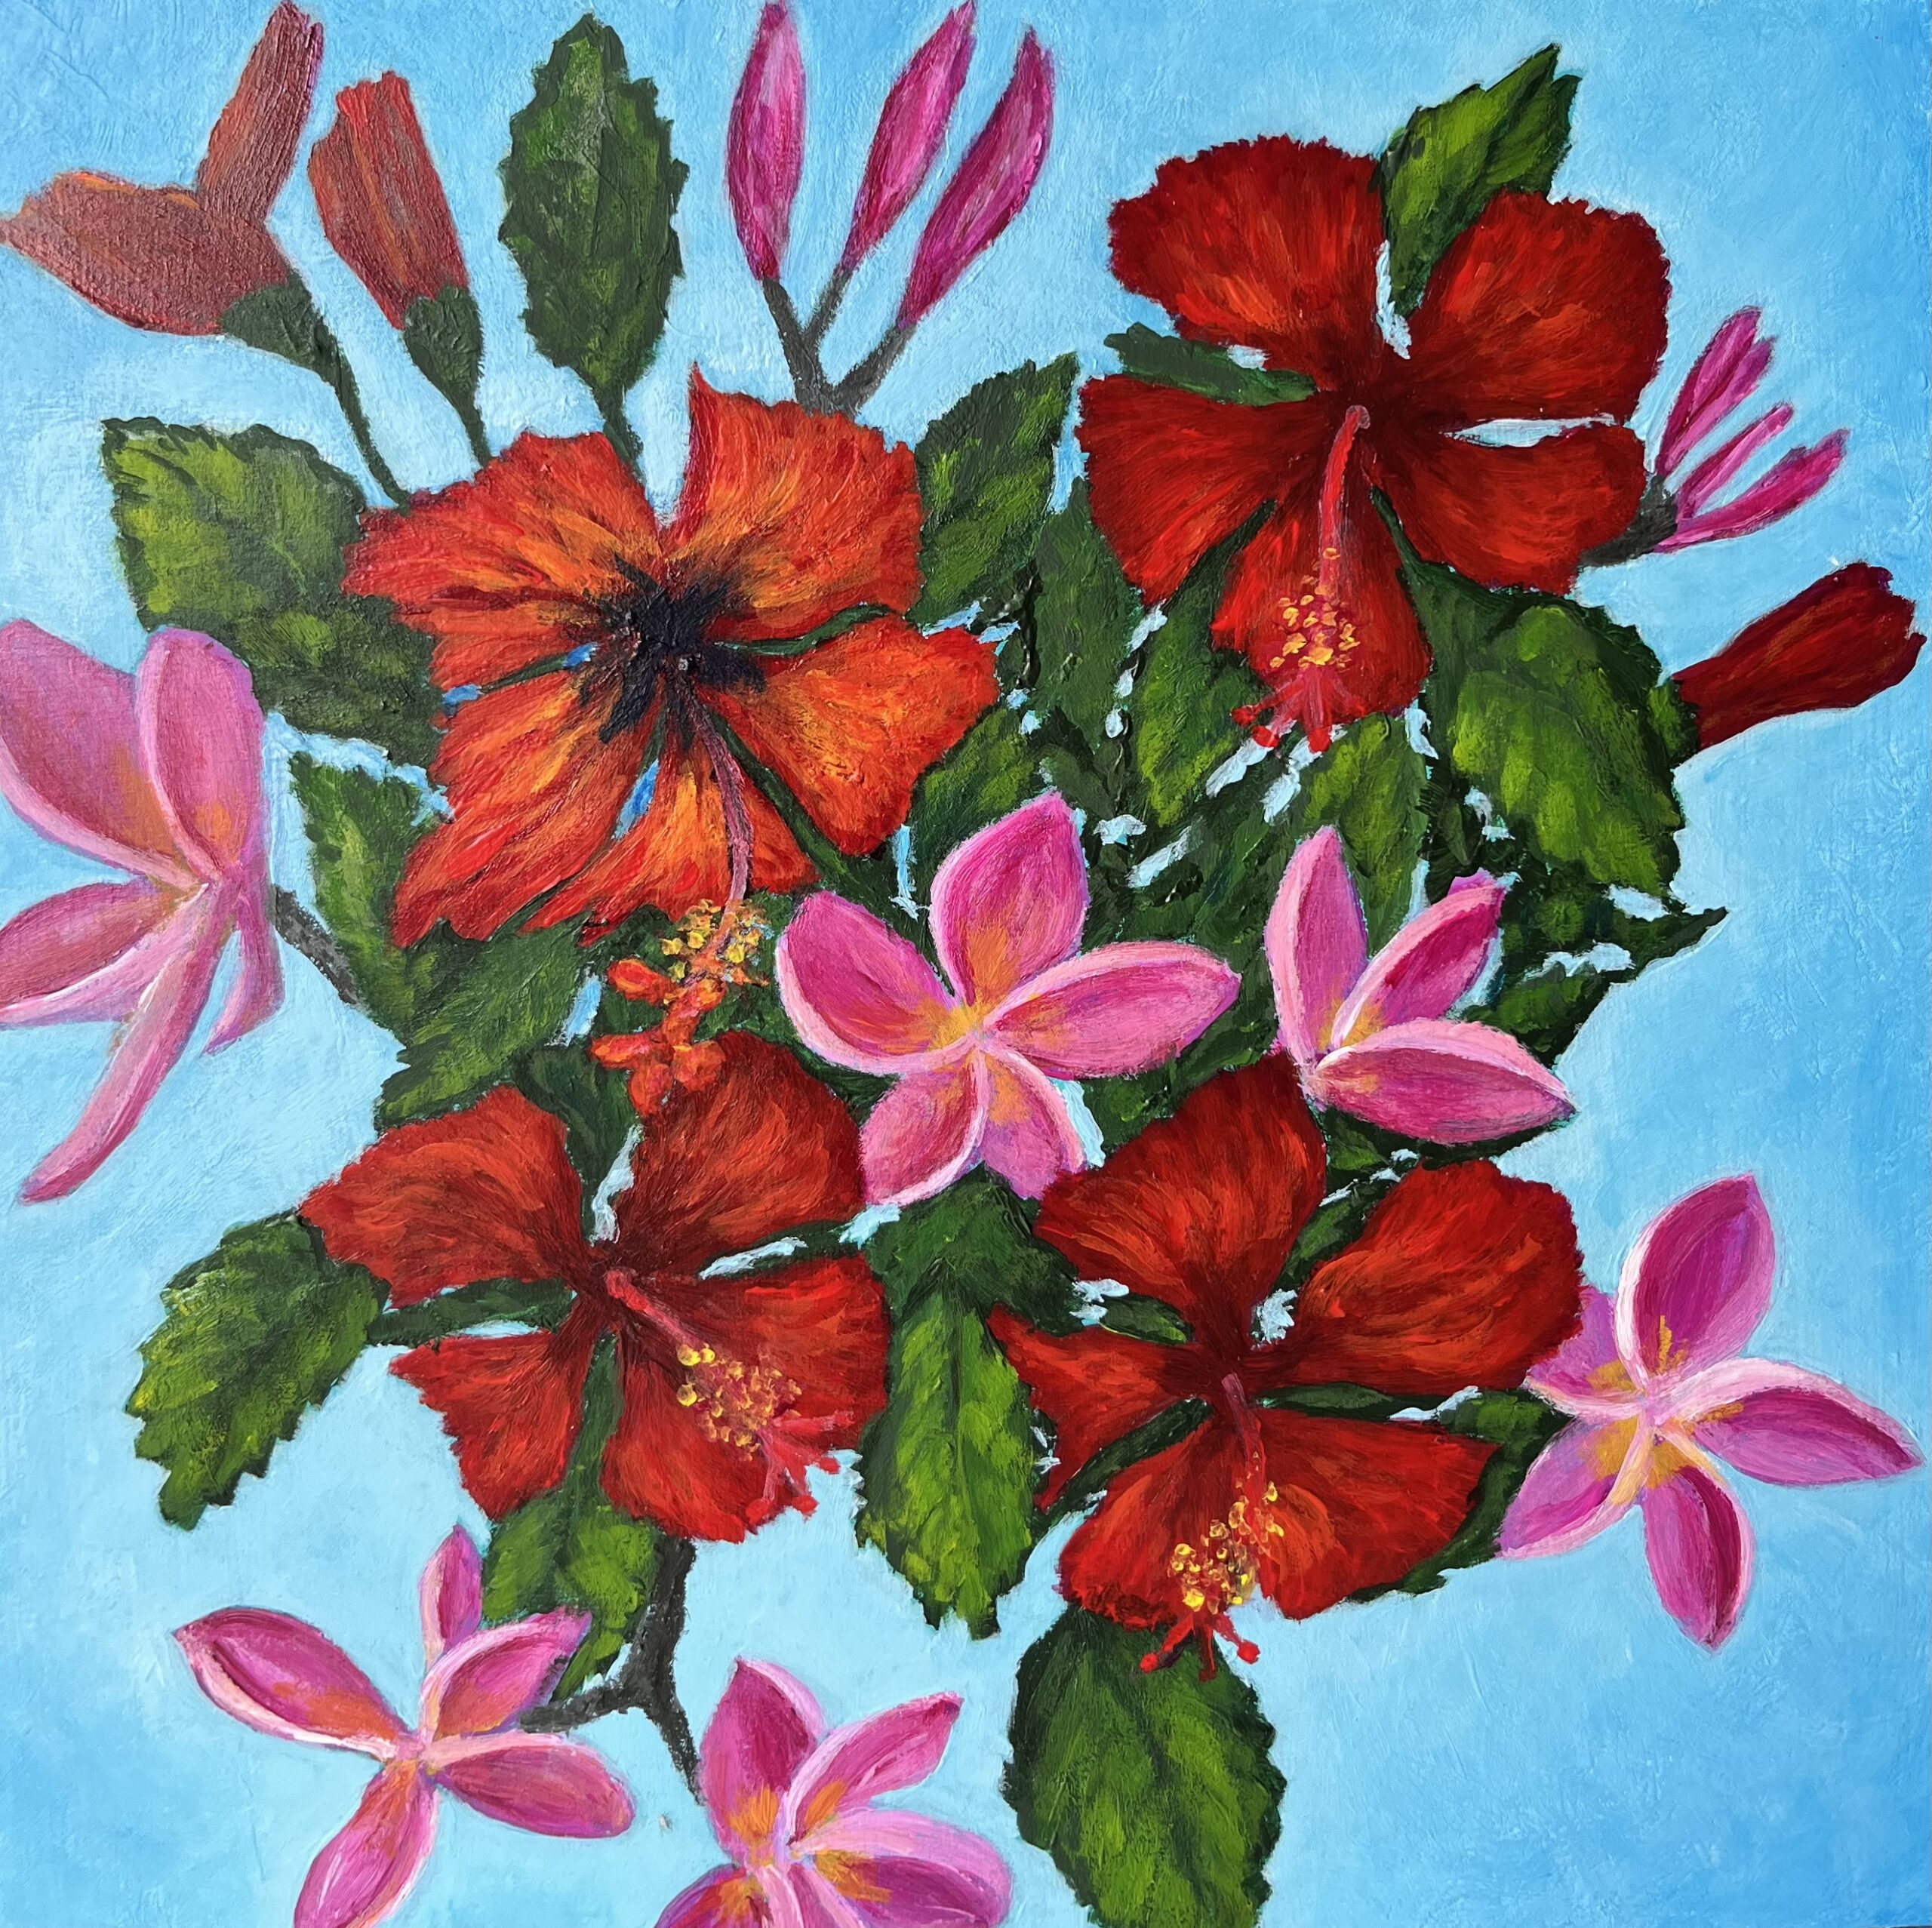 Island Flowers 8" x 8" acrylic